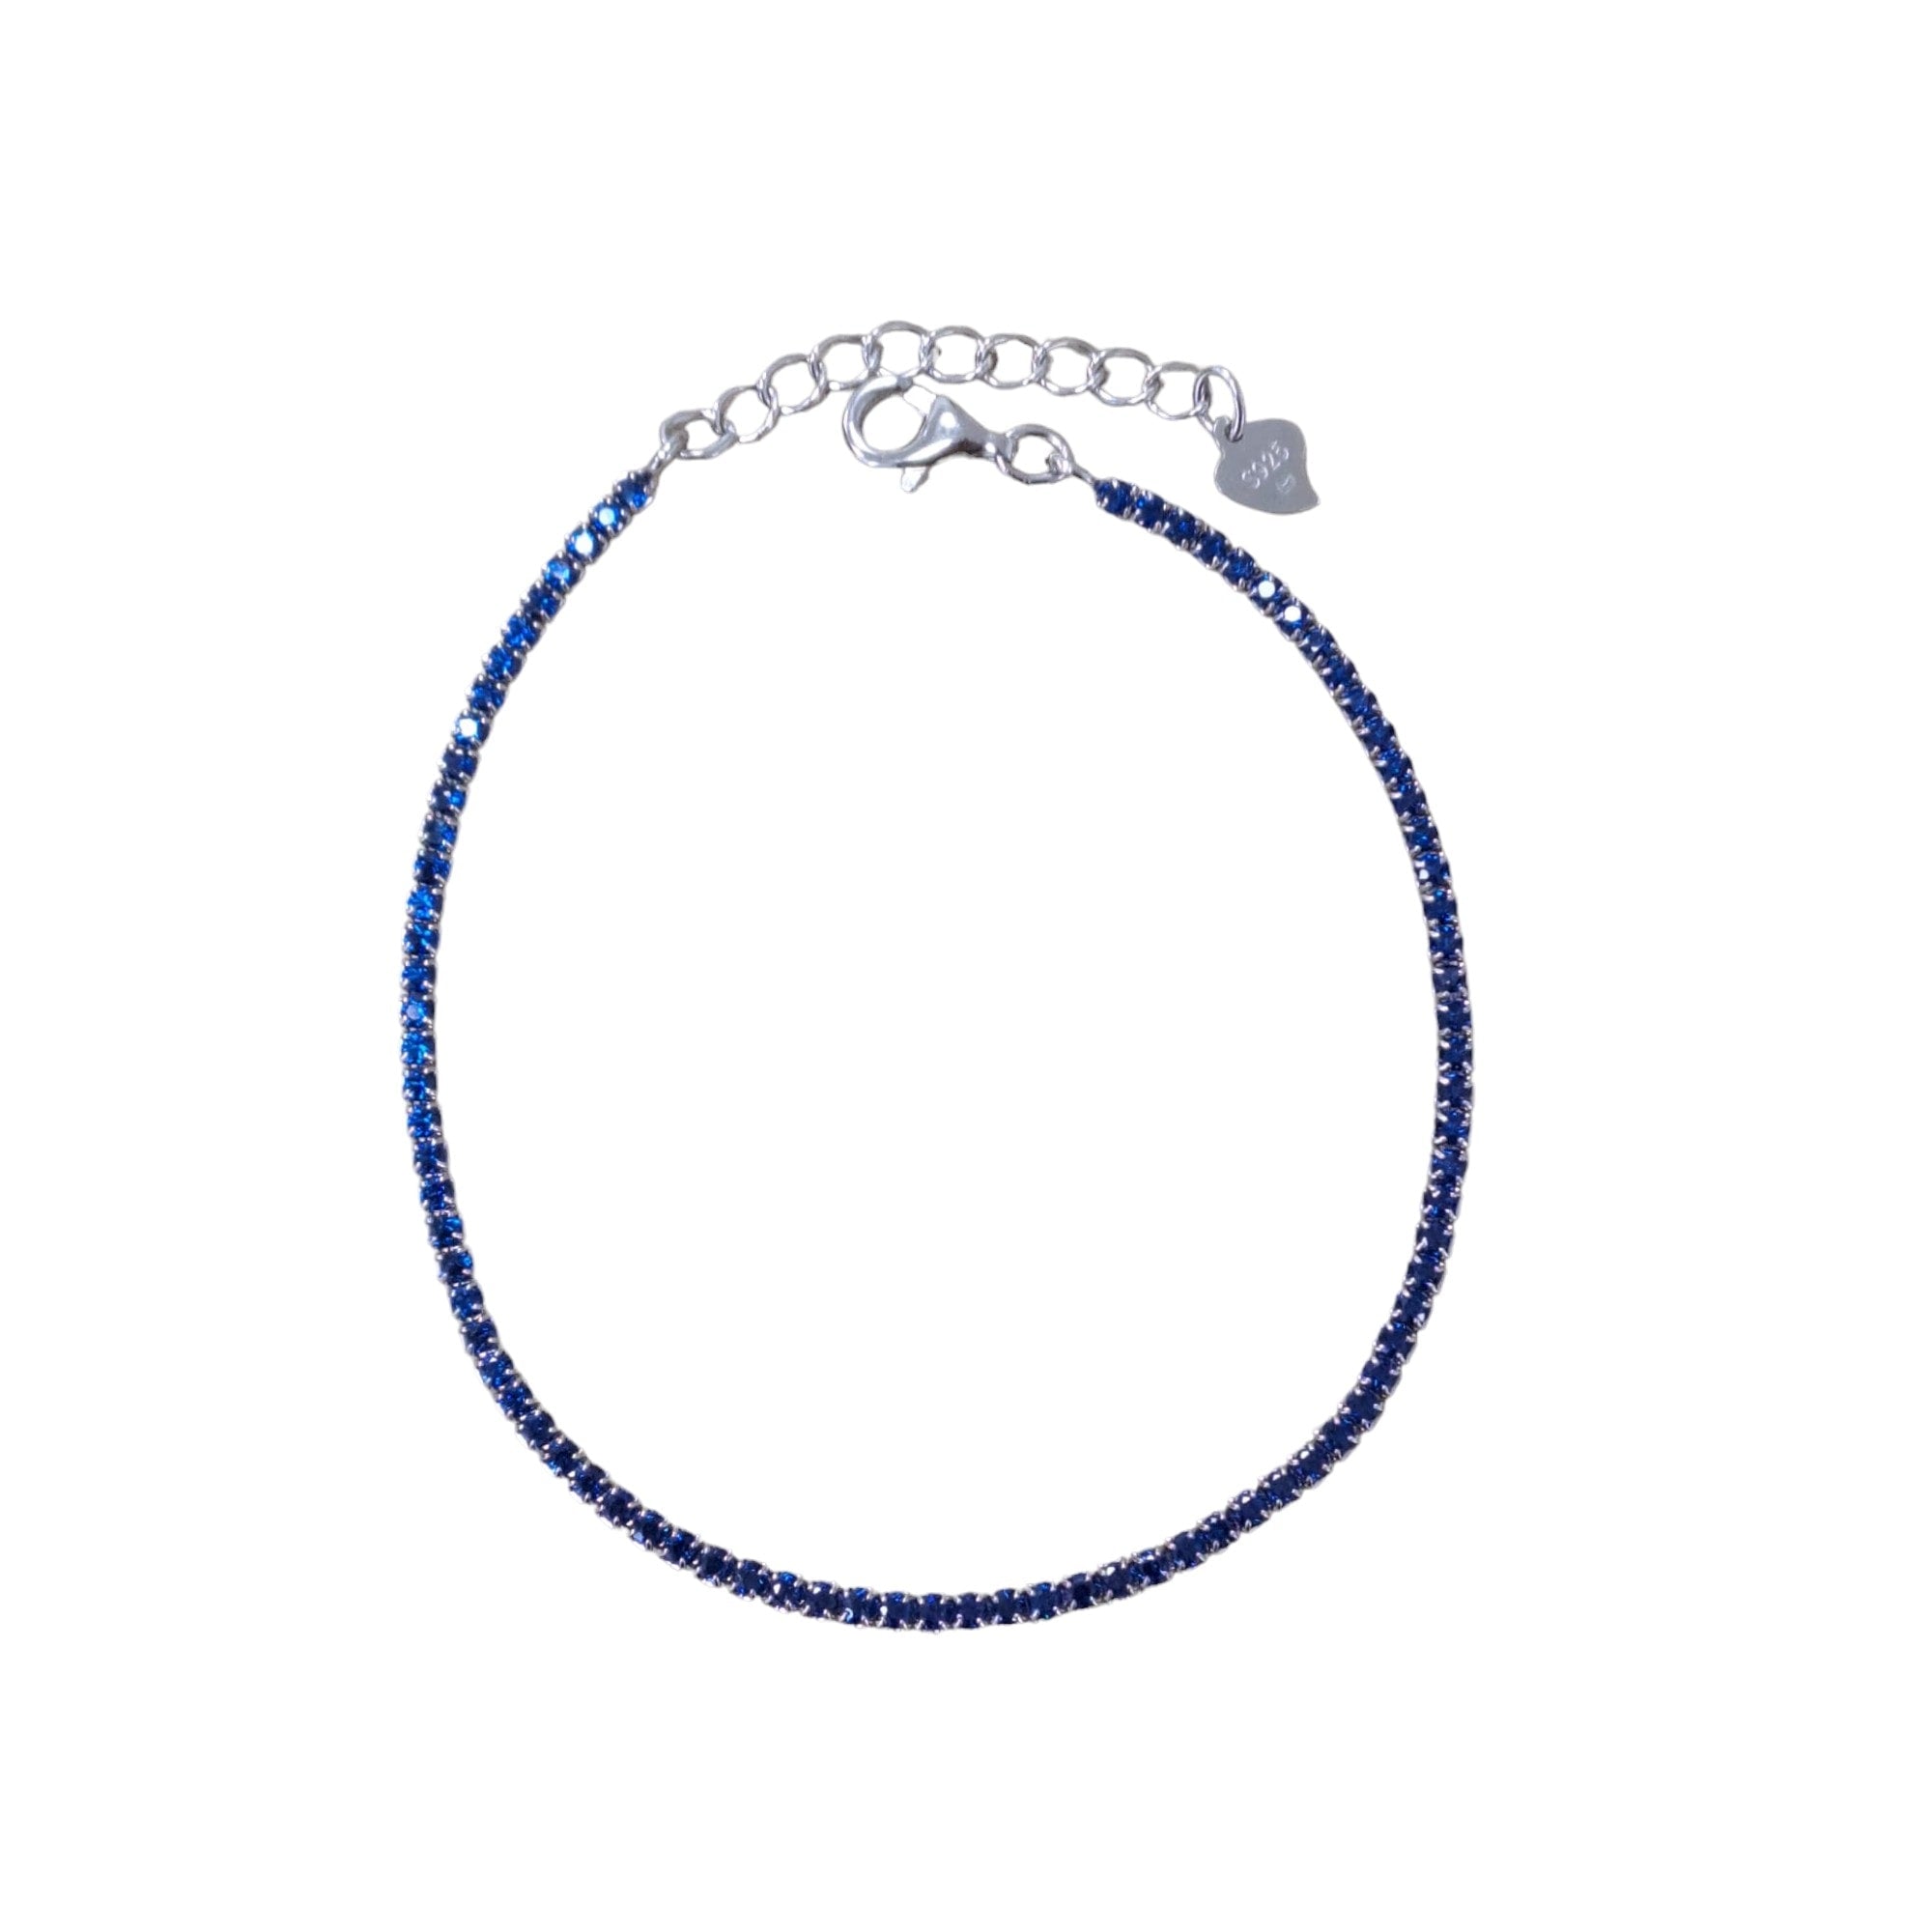 Bratara tennis, din argint 925, rodiat, cu pietre albastre din zirconiu, Oda C1